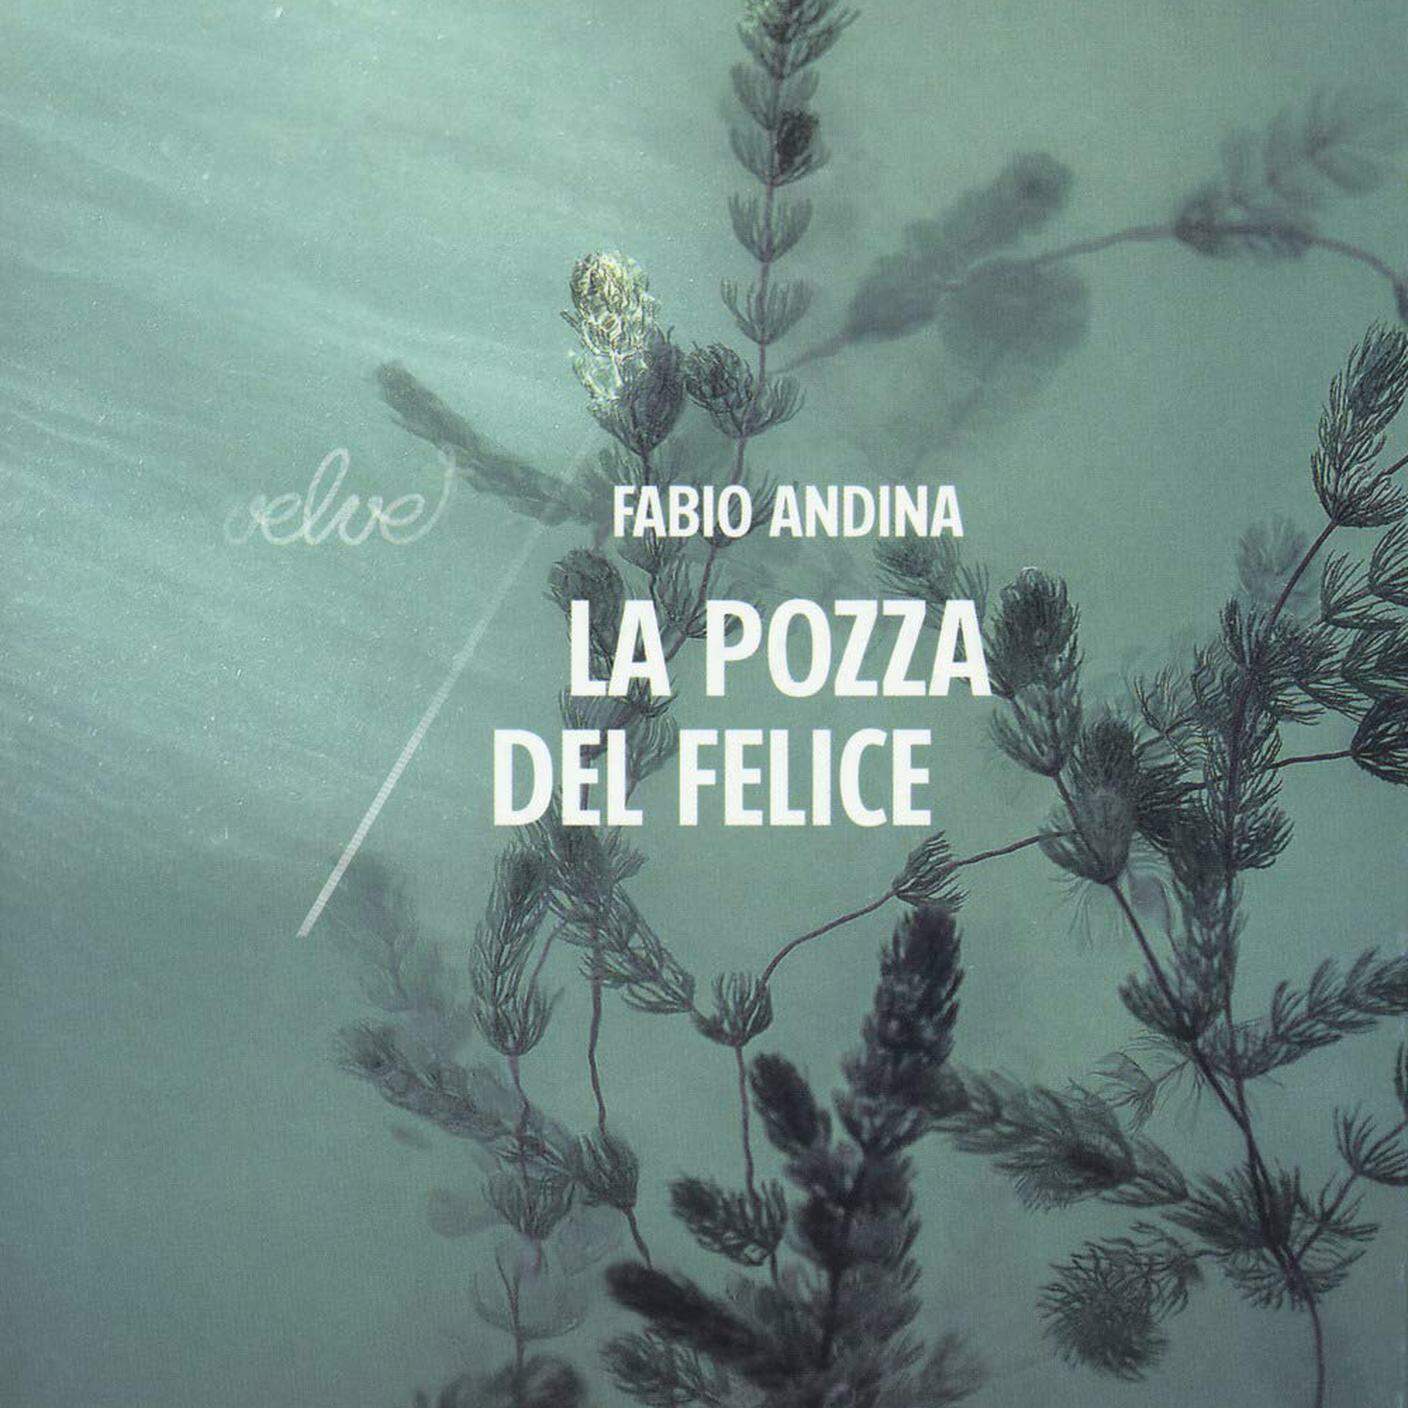 Fabio Andina, "La pozza del Felice", Rubettinoeditore (dettaglio copertina)